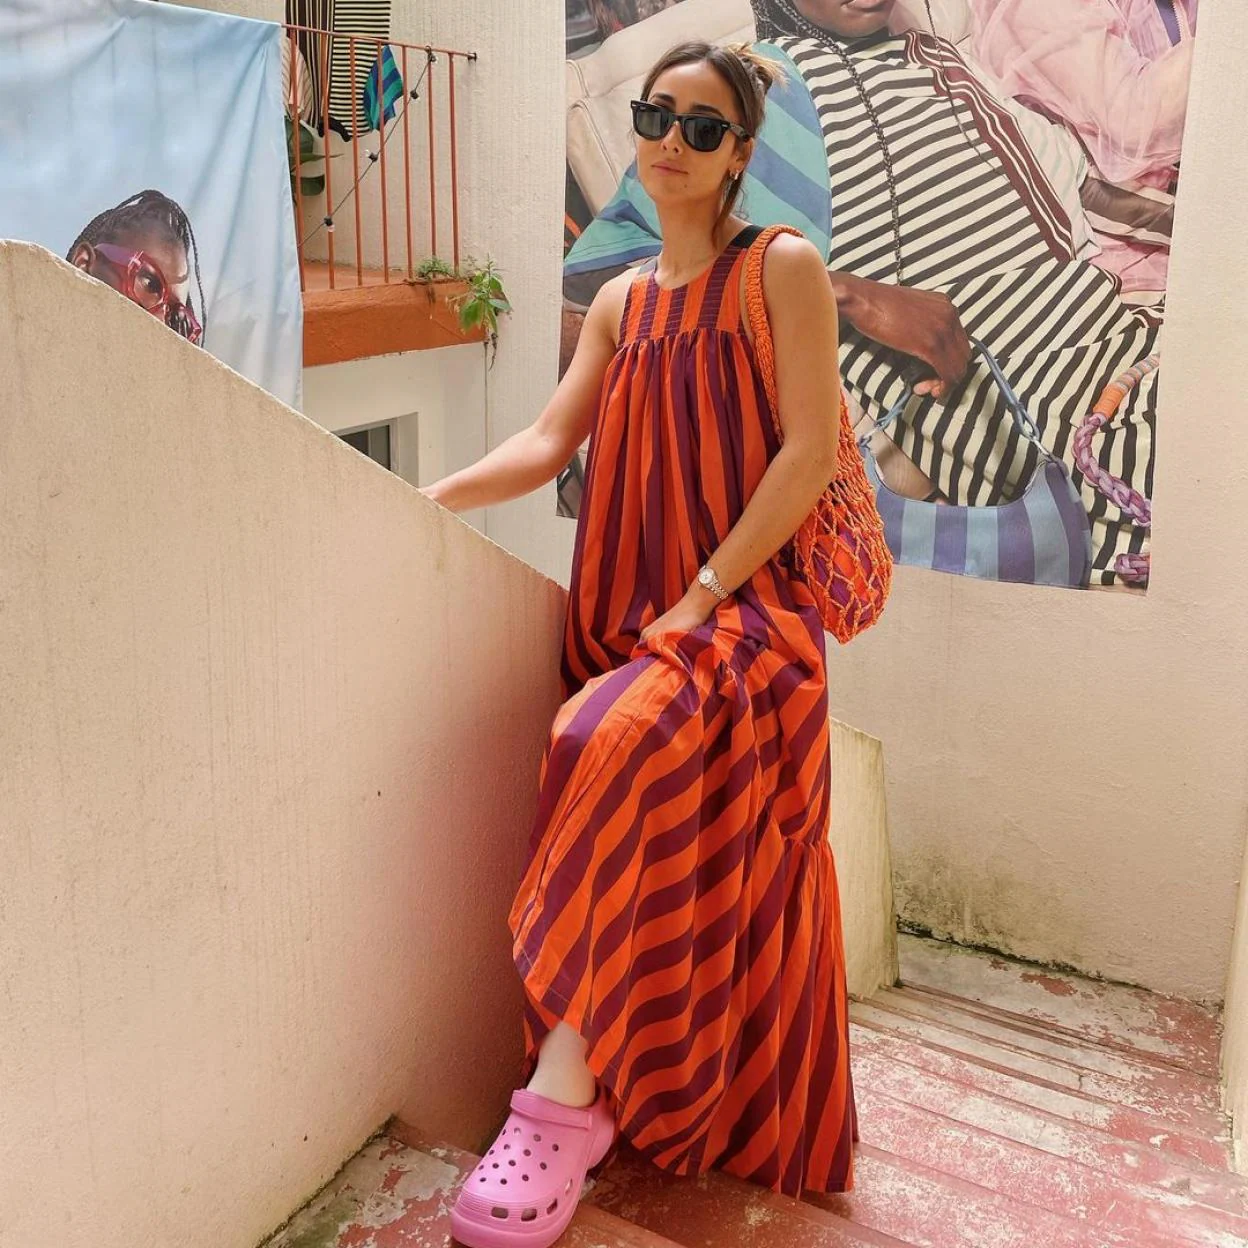 MODA: El precioso vestido de Parfois (con bolso y bañador a juego) parece de lujo y ya arrasa en Instagram | Mujer Hoy